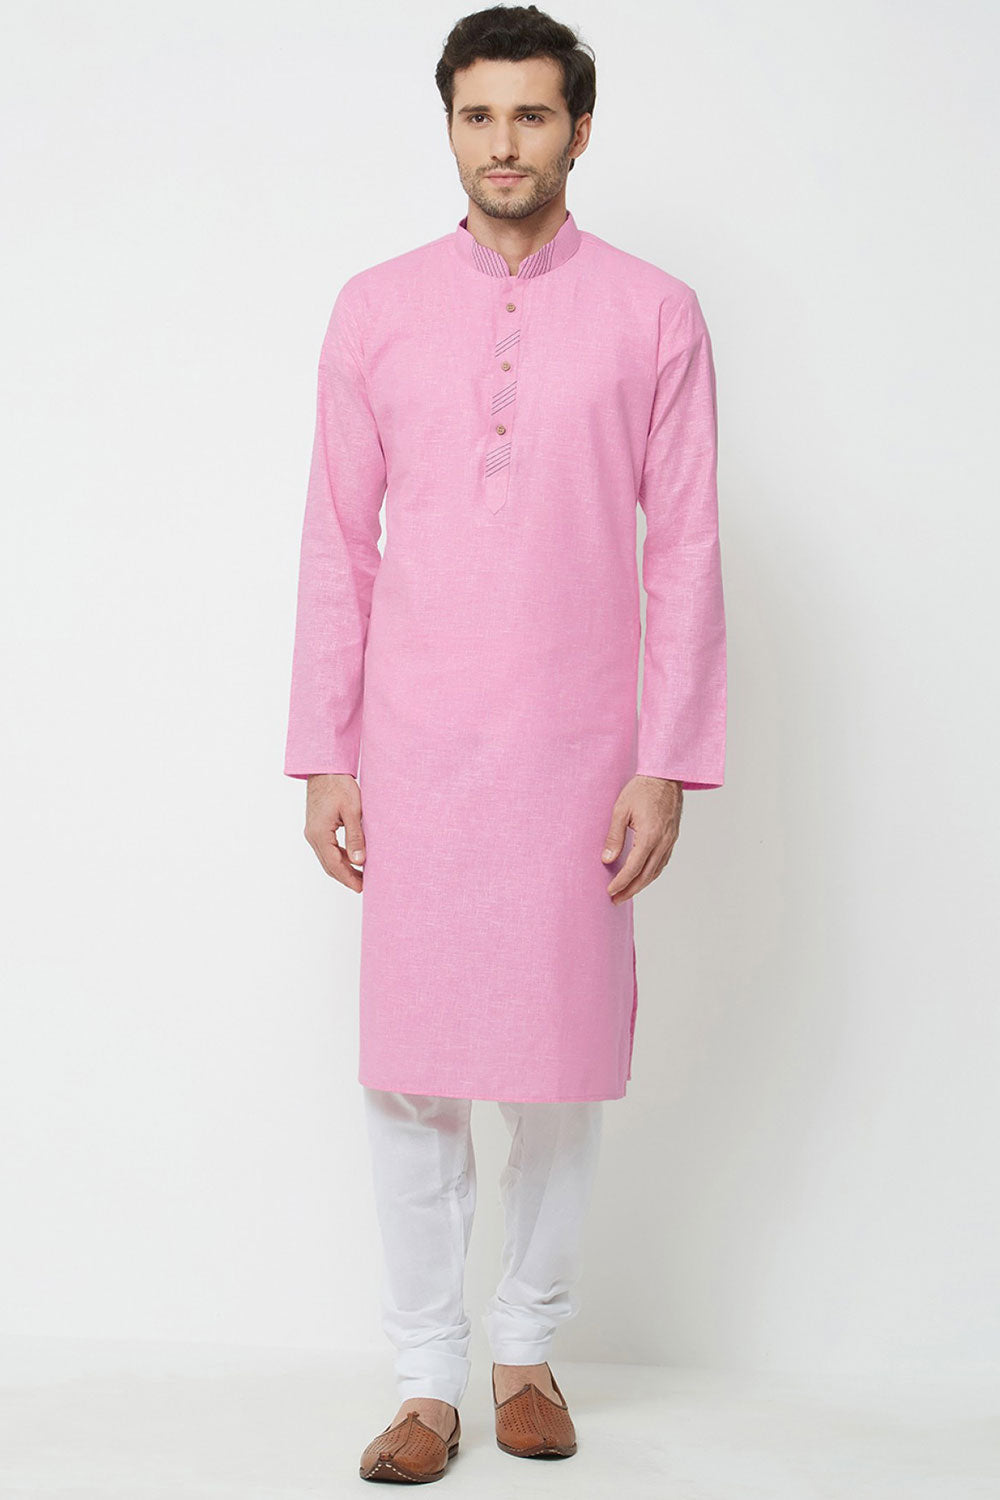 Buy Men's Blended Cotton Solid Kurta Set in Pink Online